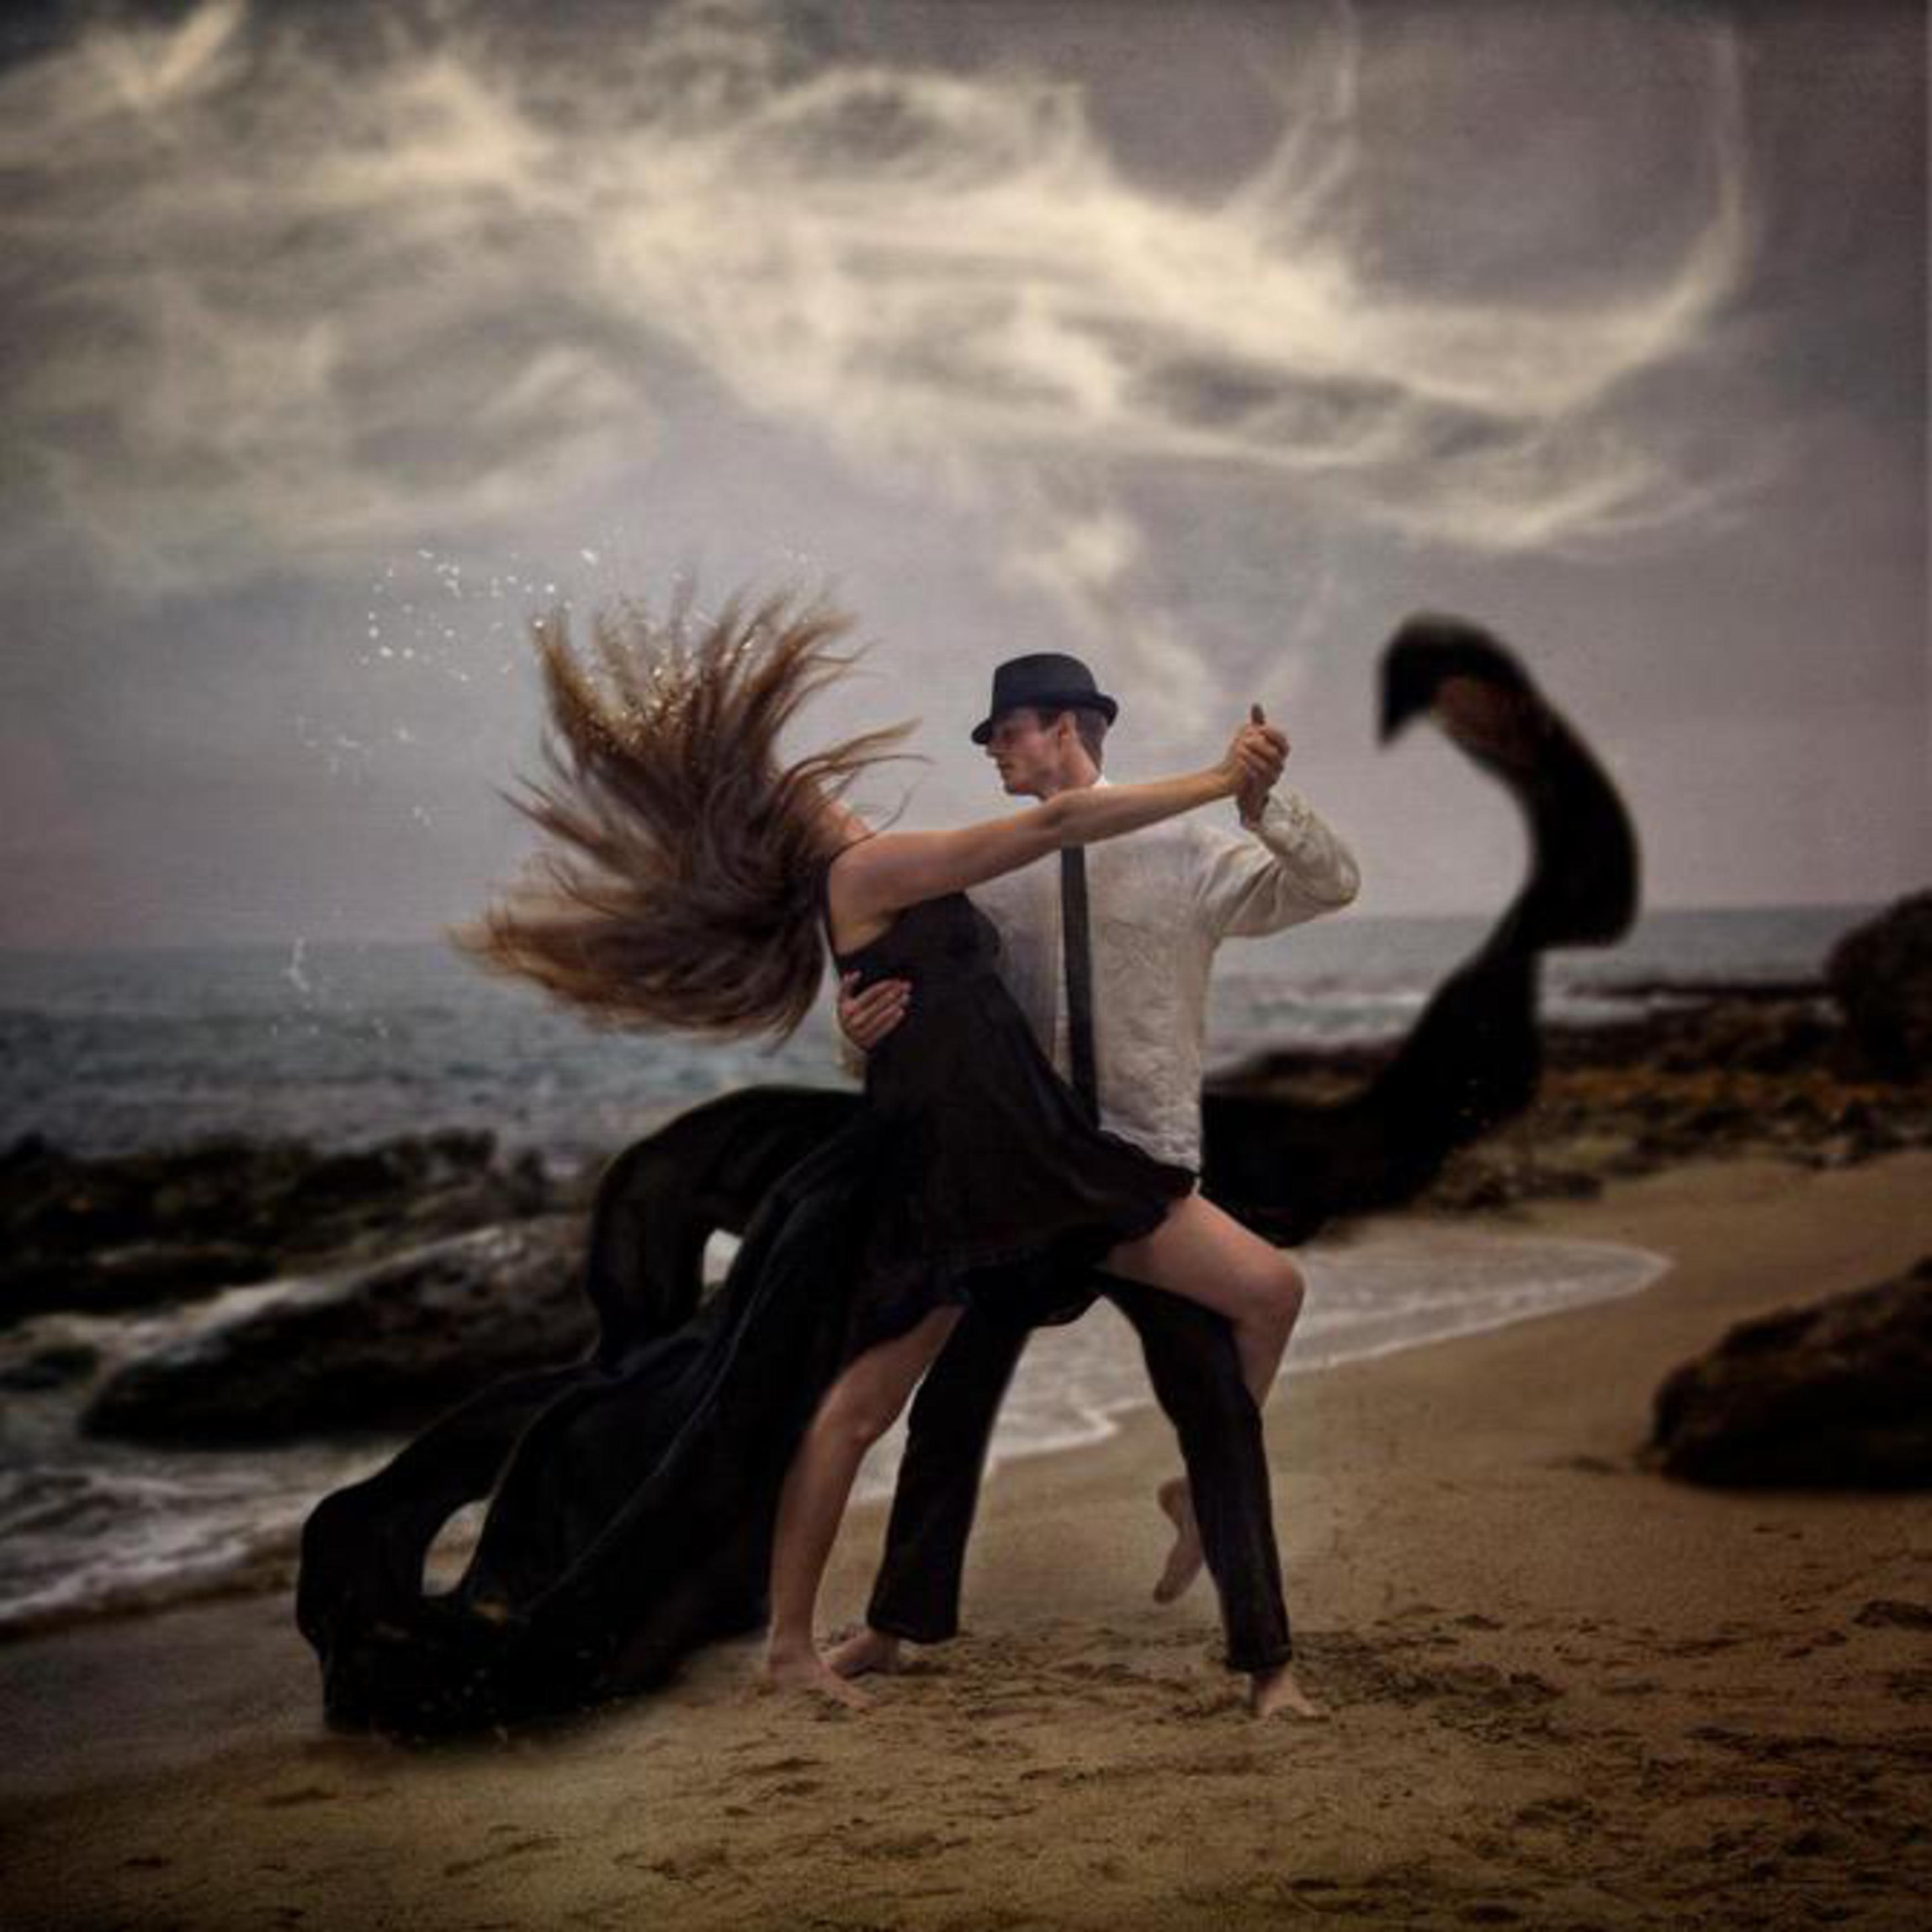 Чувственный танец. Танец мужчины и женщины. Танцы для влюбленных. Влюбленные в танце. Двое танцуют.